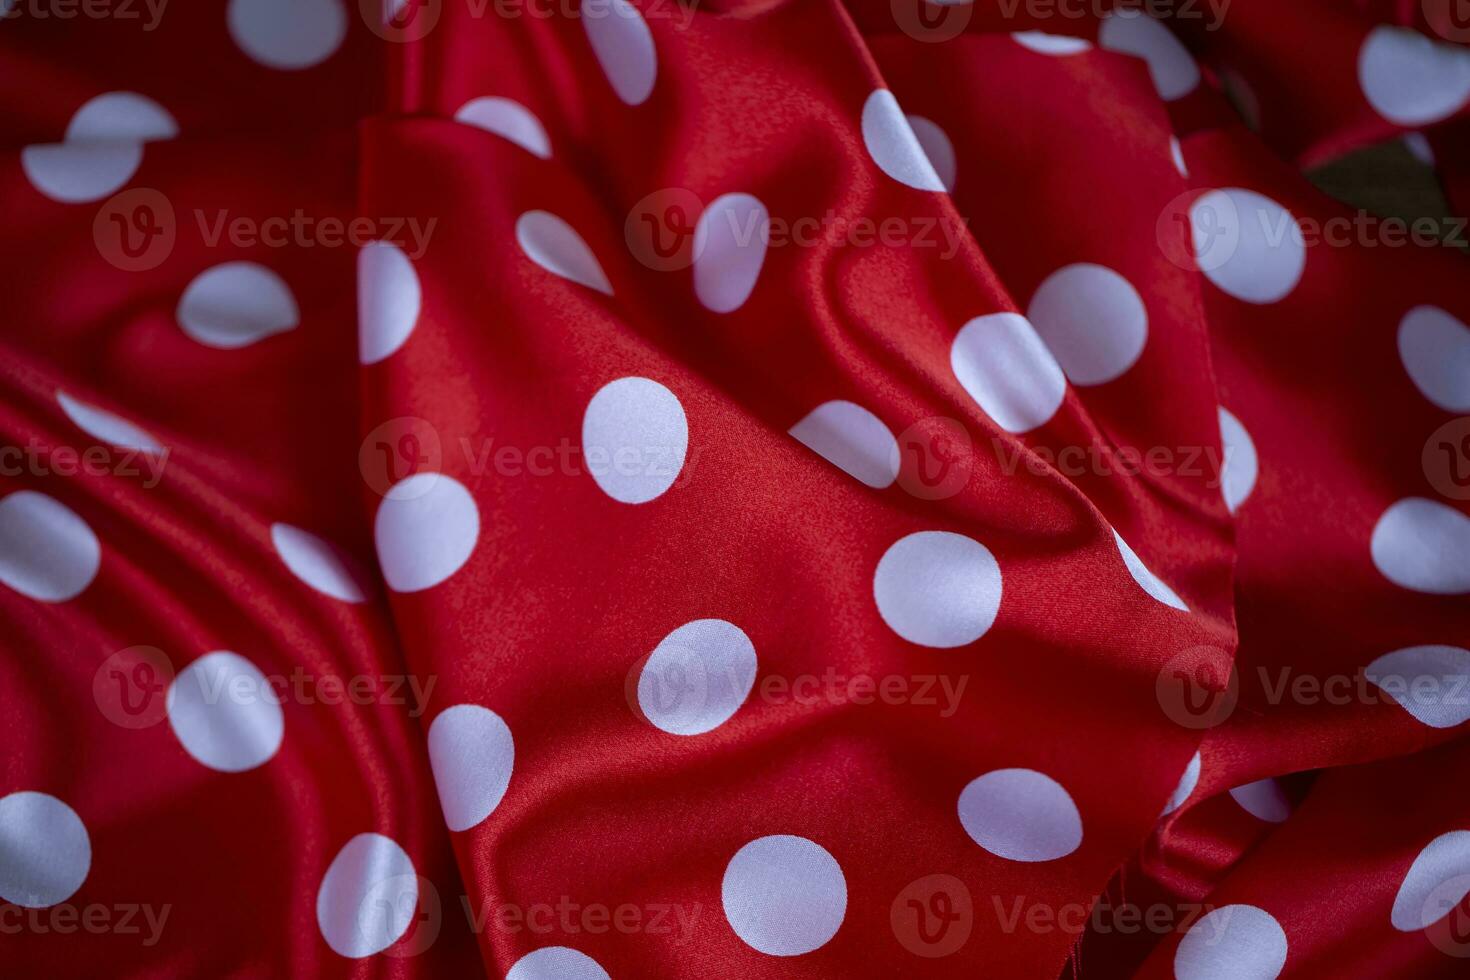 vermelho seda tecido com ampla branco polca pontos. polca ponto fundo. foto